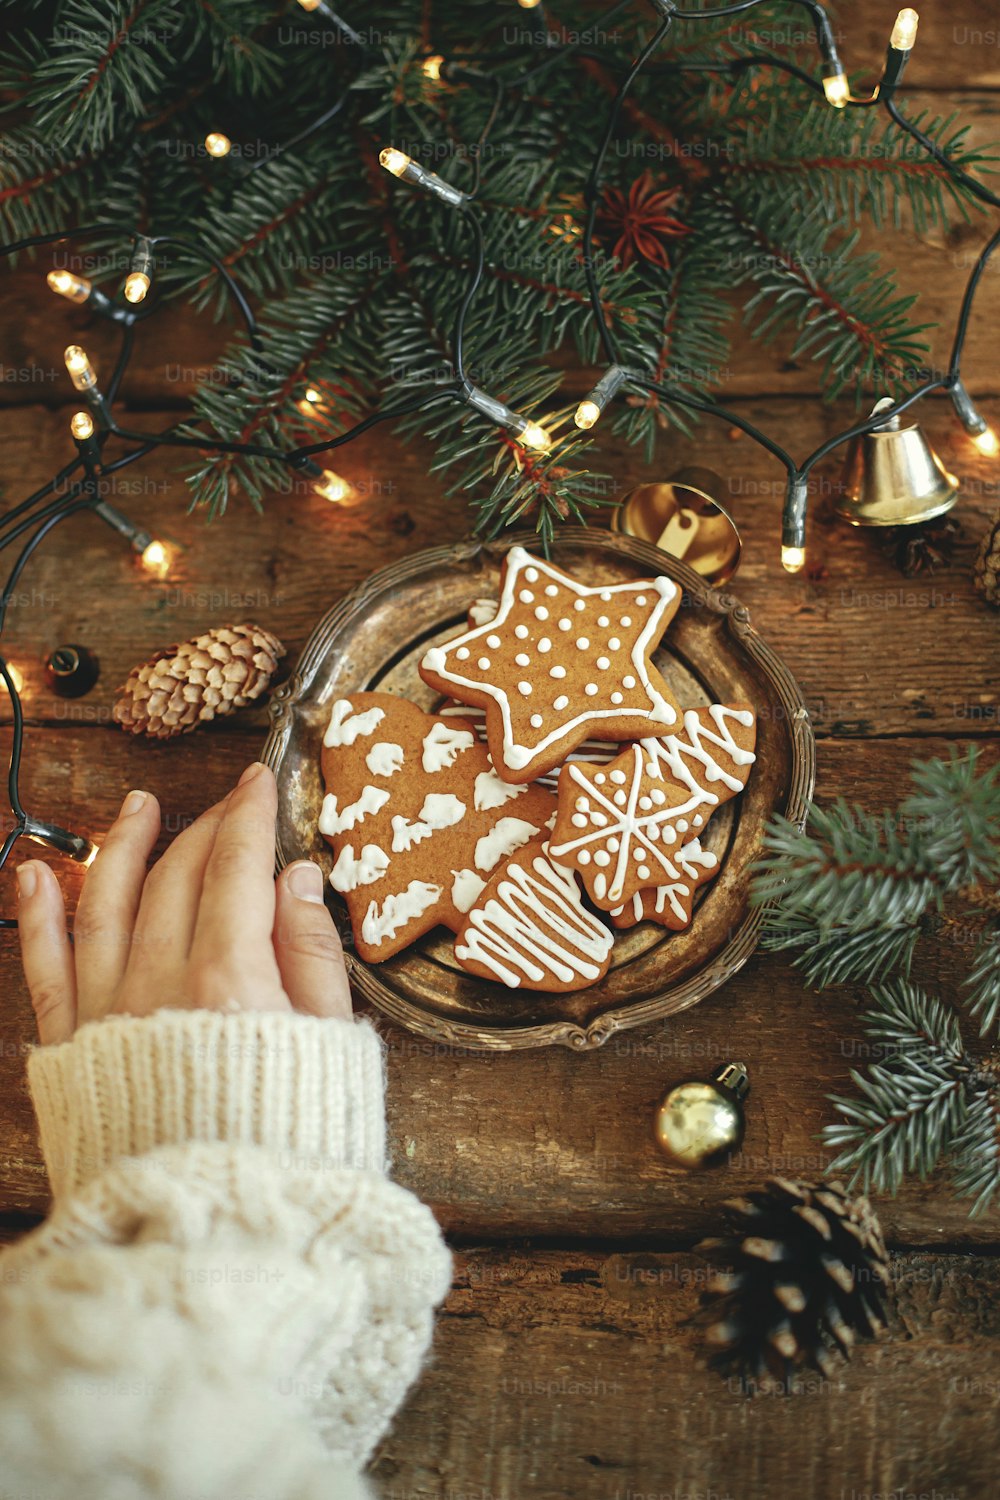 クリスマスジンジャーブレッドクッキー、モミの枝、素朴な木製のテーブルの上の暖かいライト、フラットレイとプレートを保持しています。雰囲気のある冬の画像。季節のご挨拶。おいしい自家製クッキー